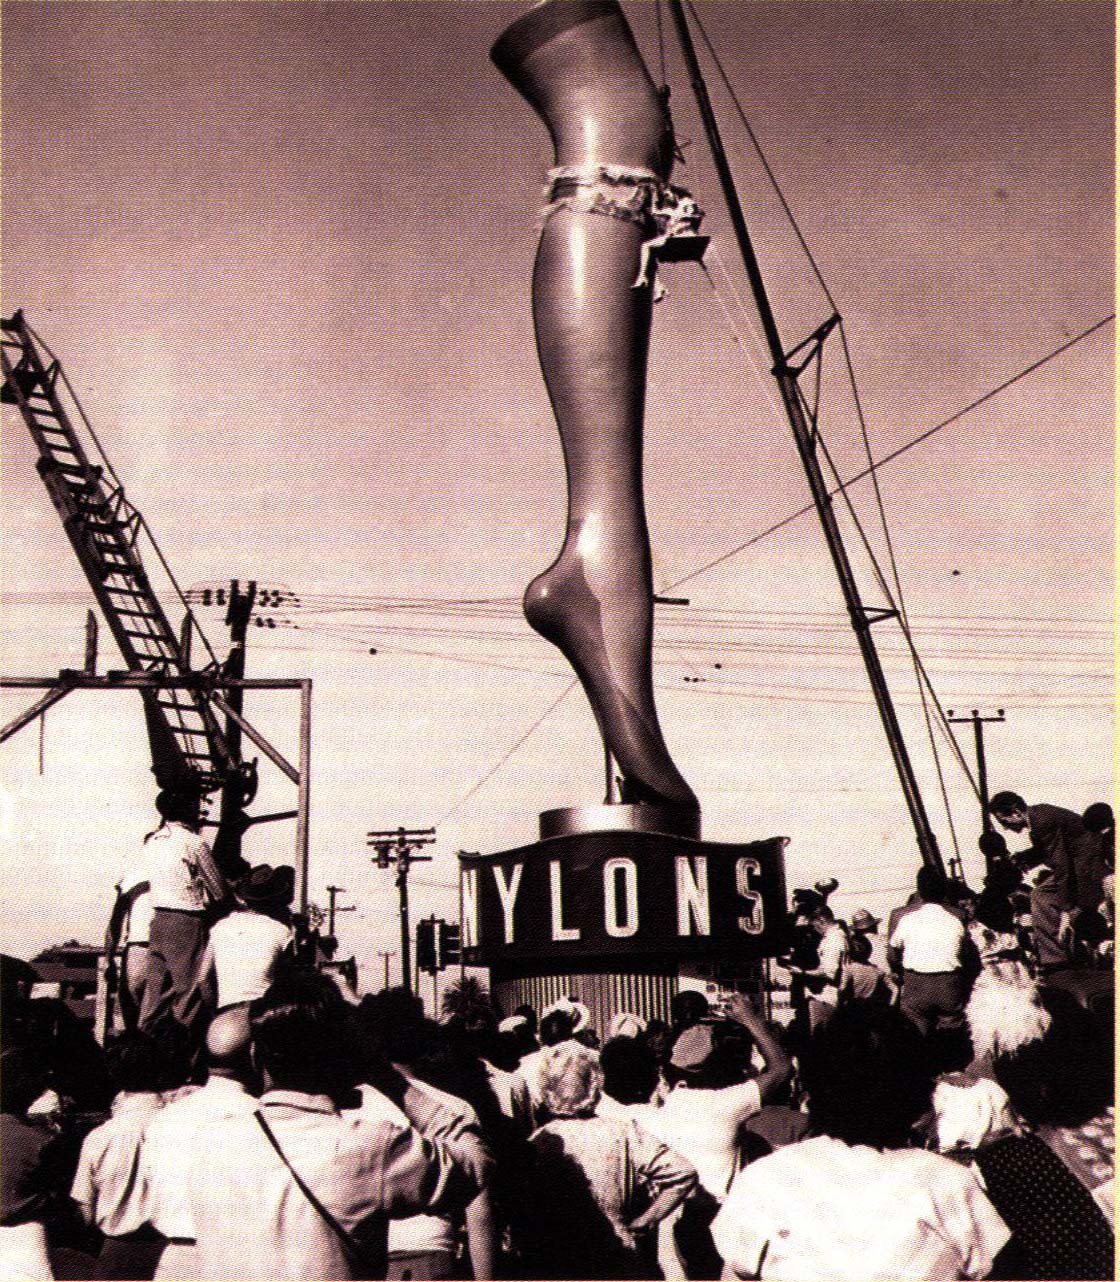 Для продвижения нейлона компания DuPont установила в Лос-Анджелесе двухтонный нейлоновый чулок высотой 35 футов. Актриса Мари Уилсон, чья нога, как говорят, была моделью для показа, машет фотографам с импровизированного стула.